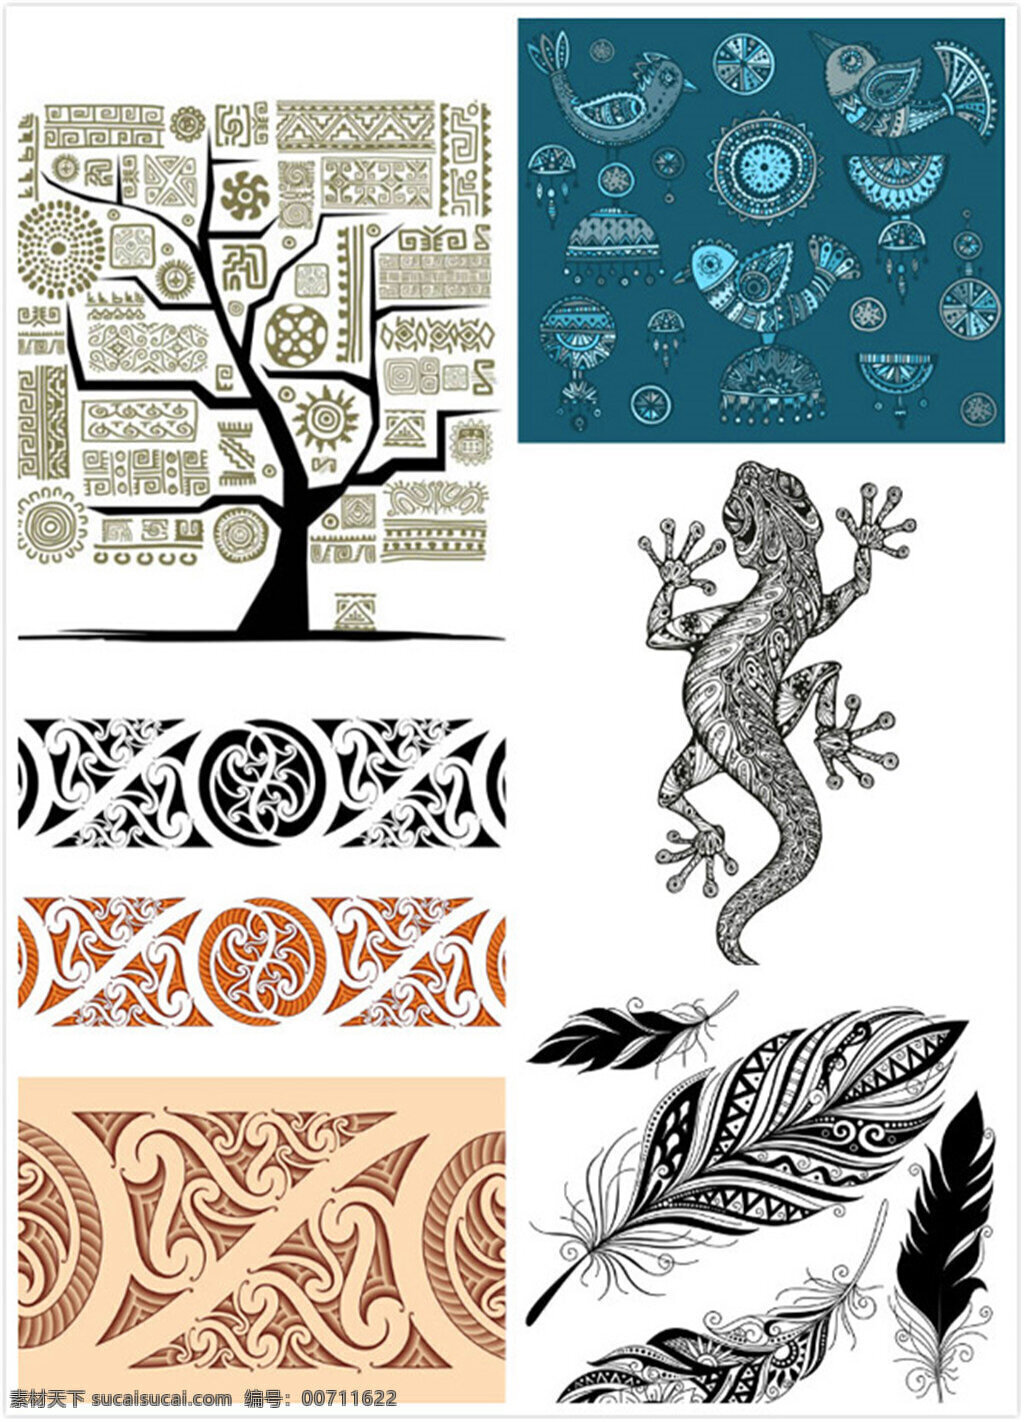 纹身图案 矢量素材 矢量图 设计素材 创意设计 纹身 刺青 图案 大树 树木 羽毛 壁虎 小鸟 黑白